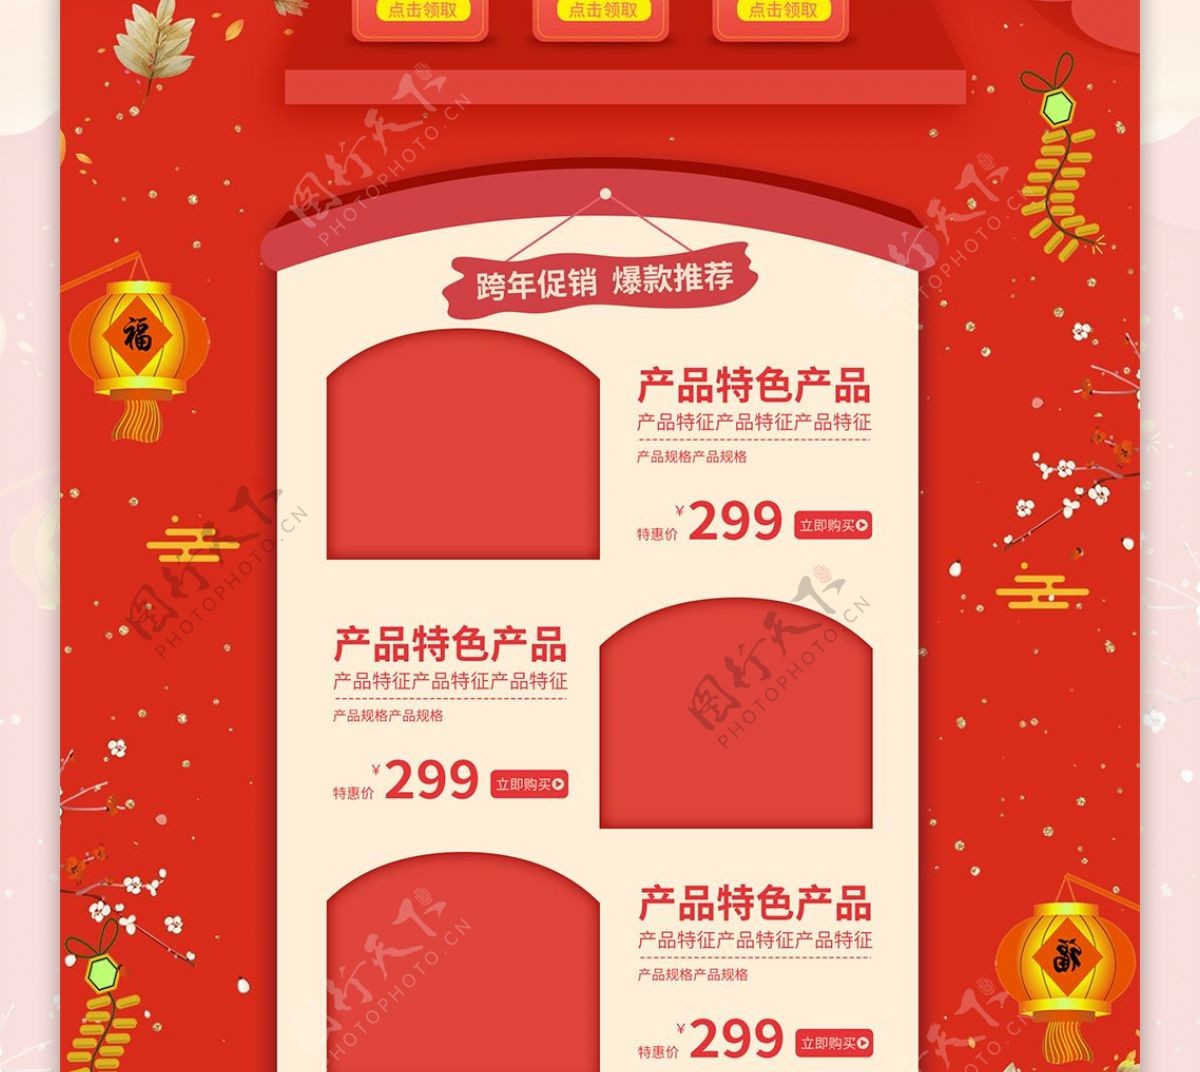 红色喜庆2019新年跨年大促电商首页模板